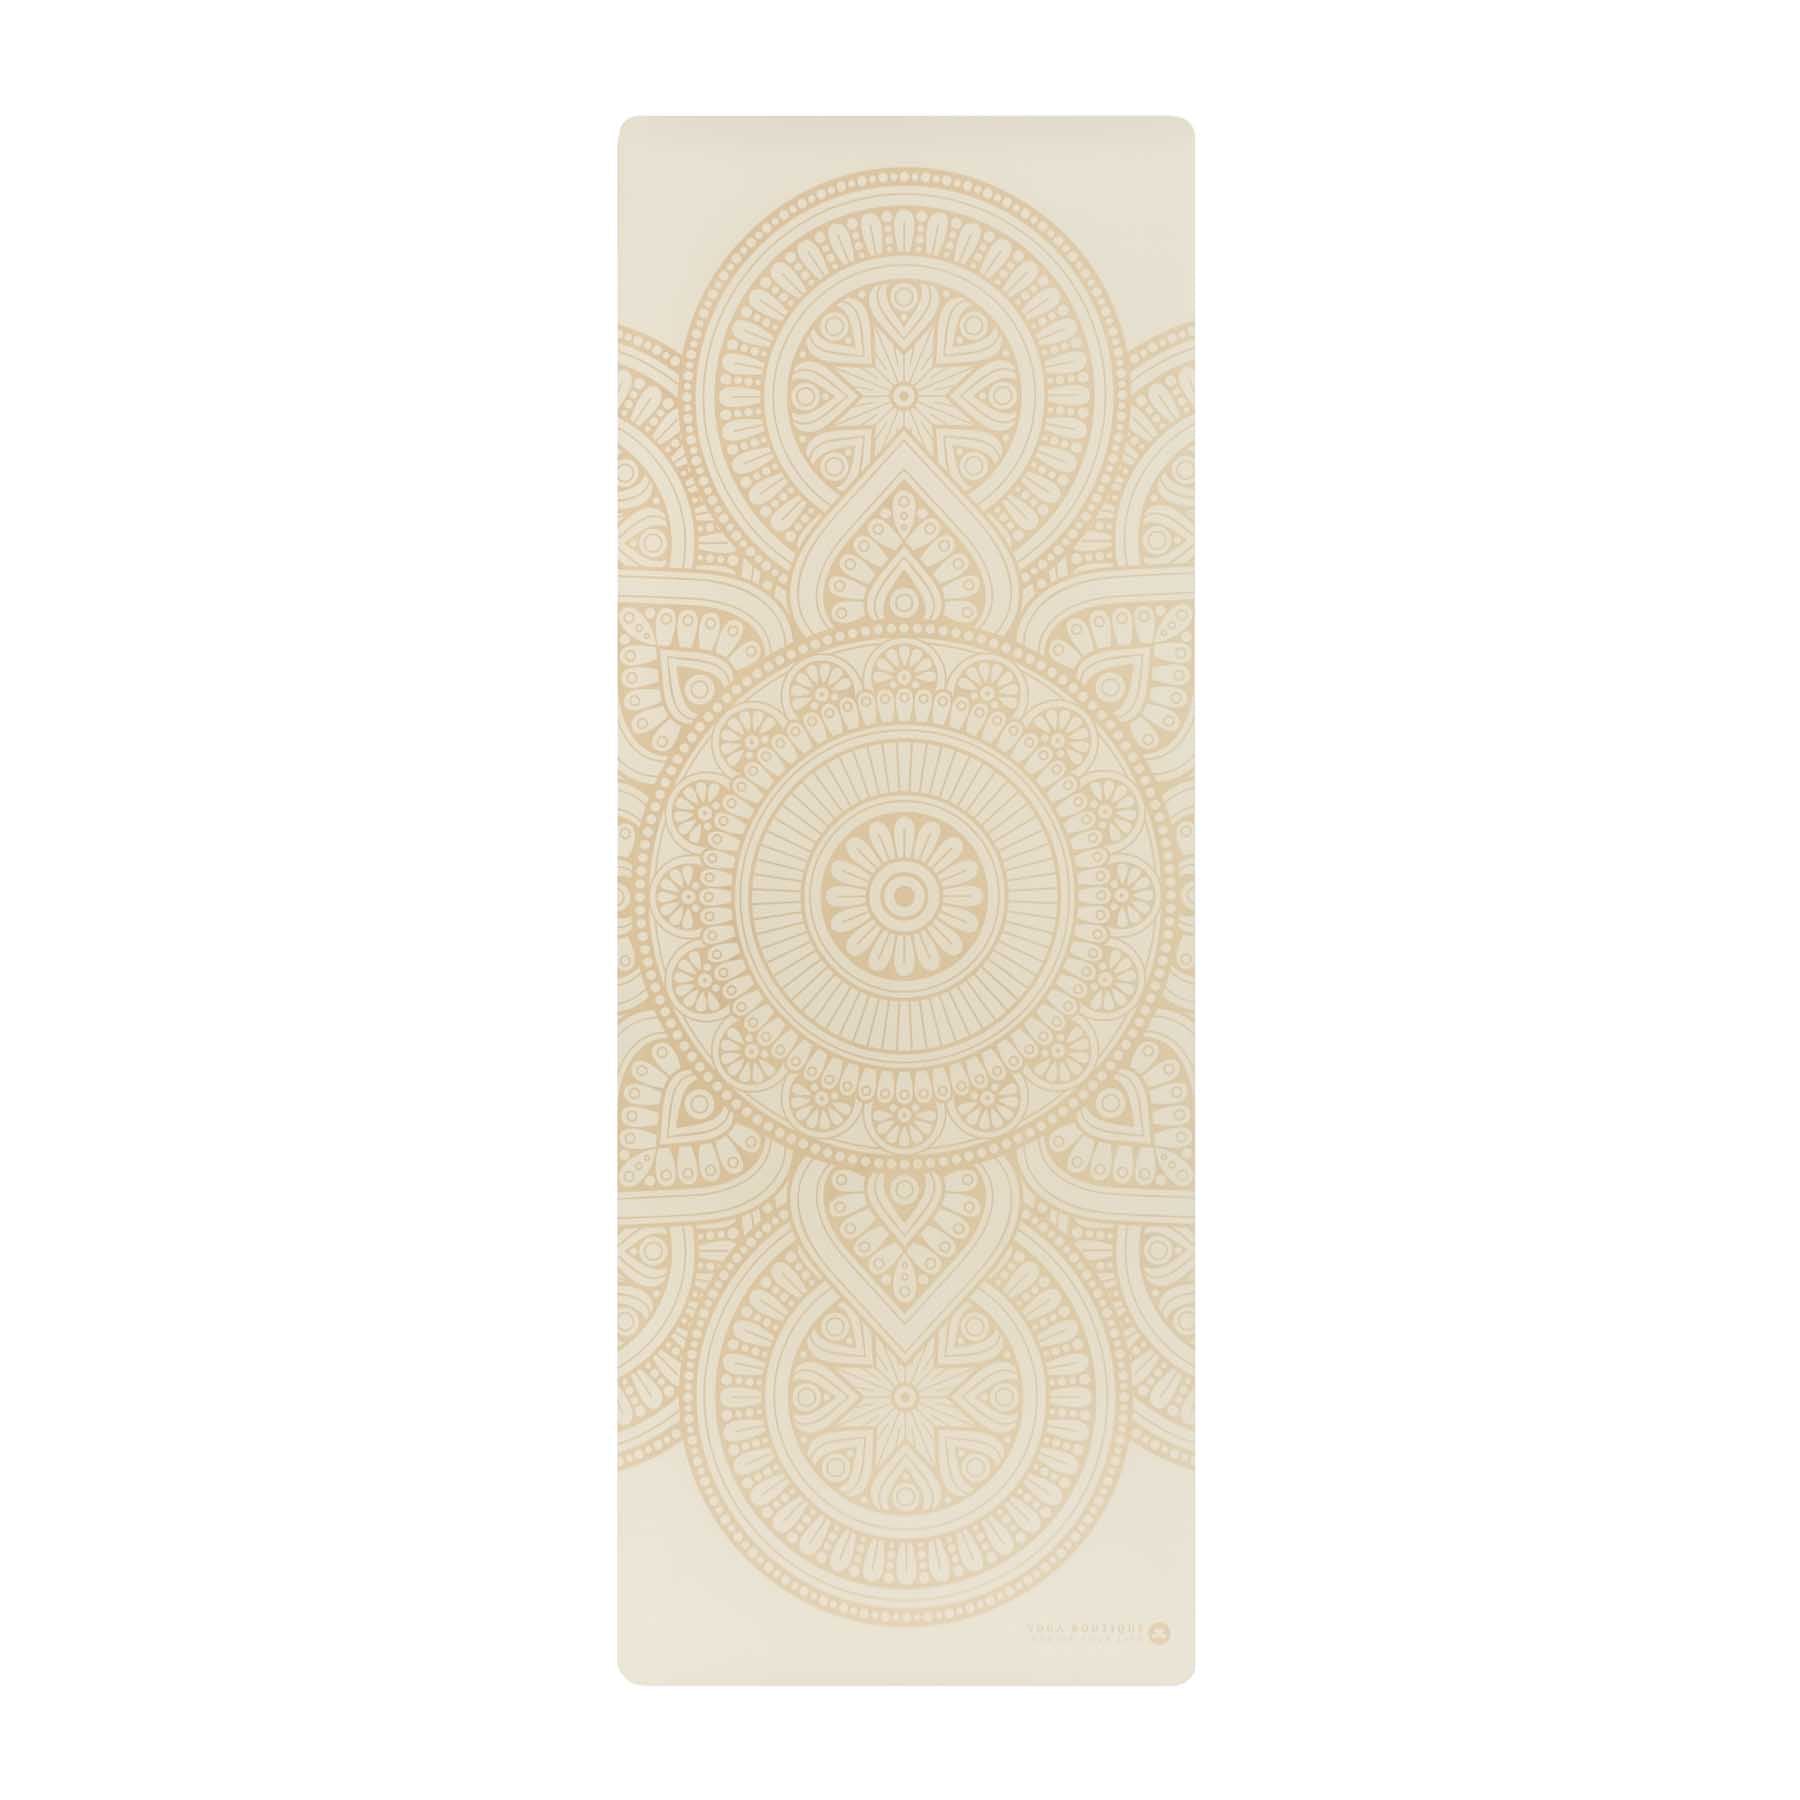 Tapis de yoga SuperGrip 2.0 Mandala Tapis de yoga très antidérapant blanc en caoutchouc naturel avec une bonne tenue